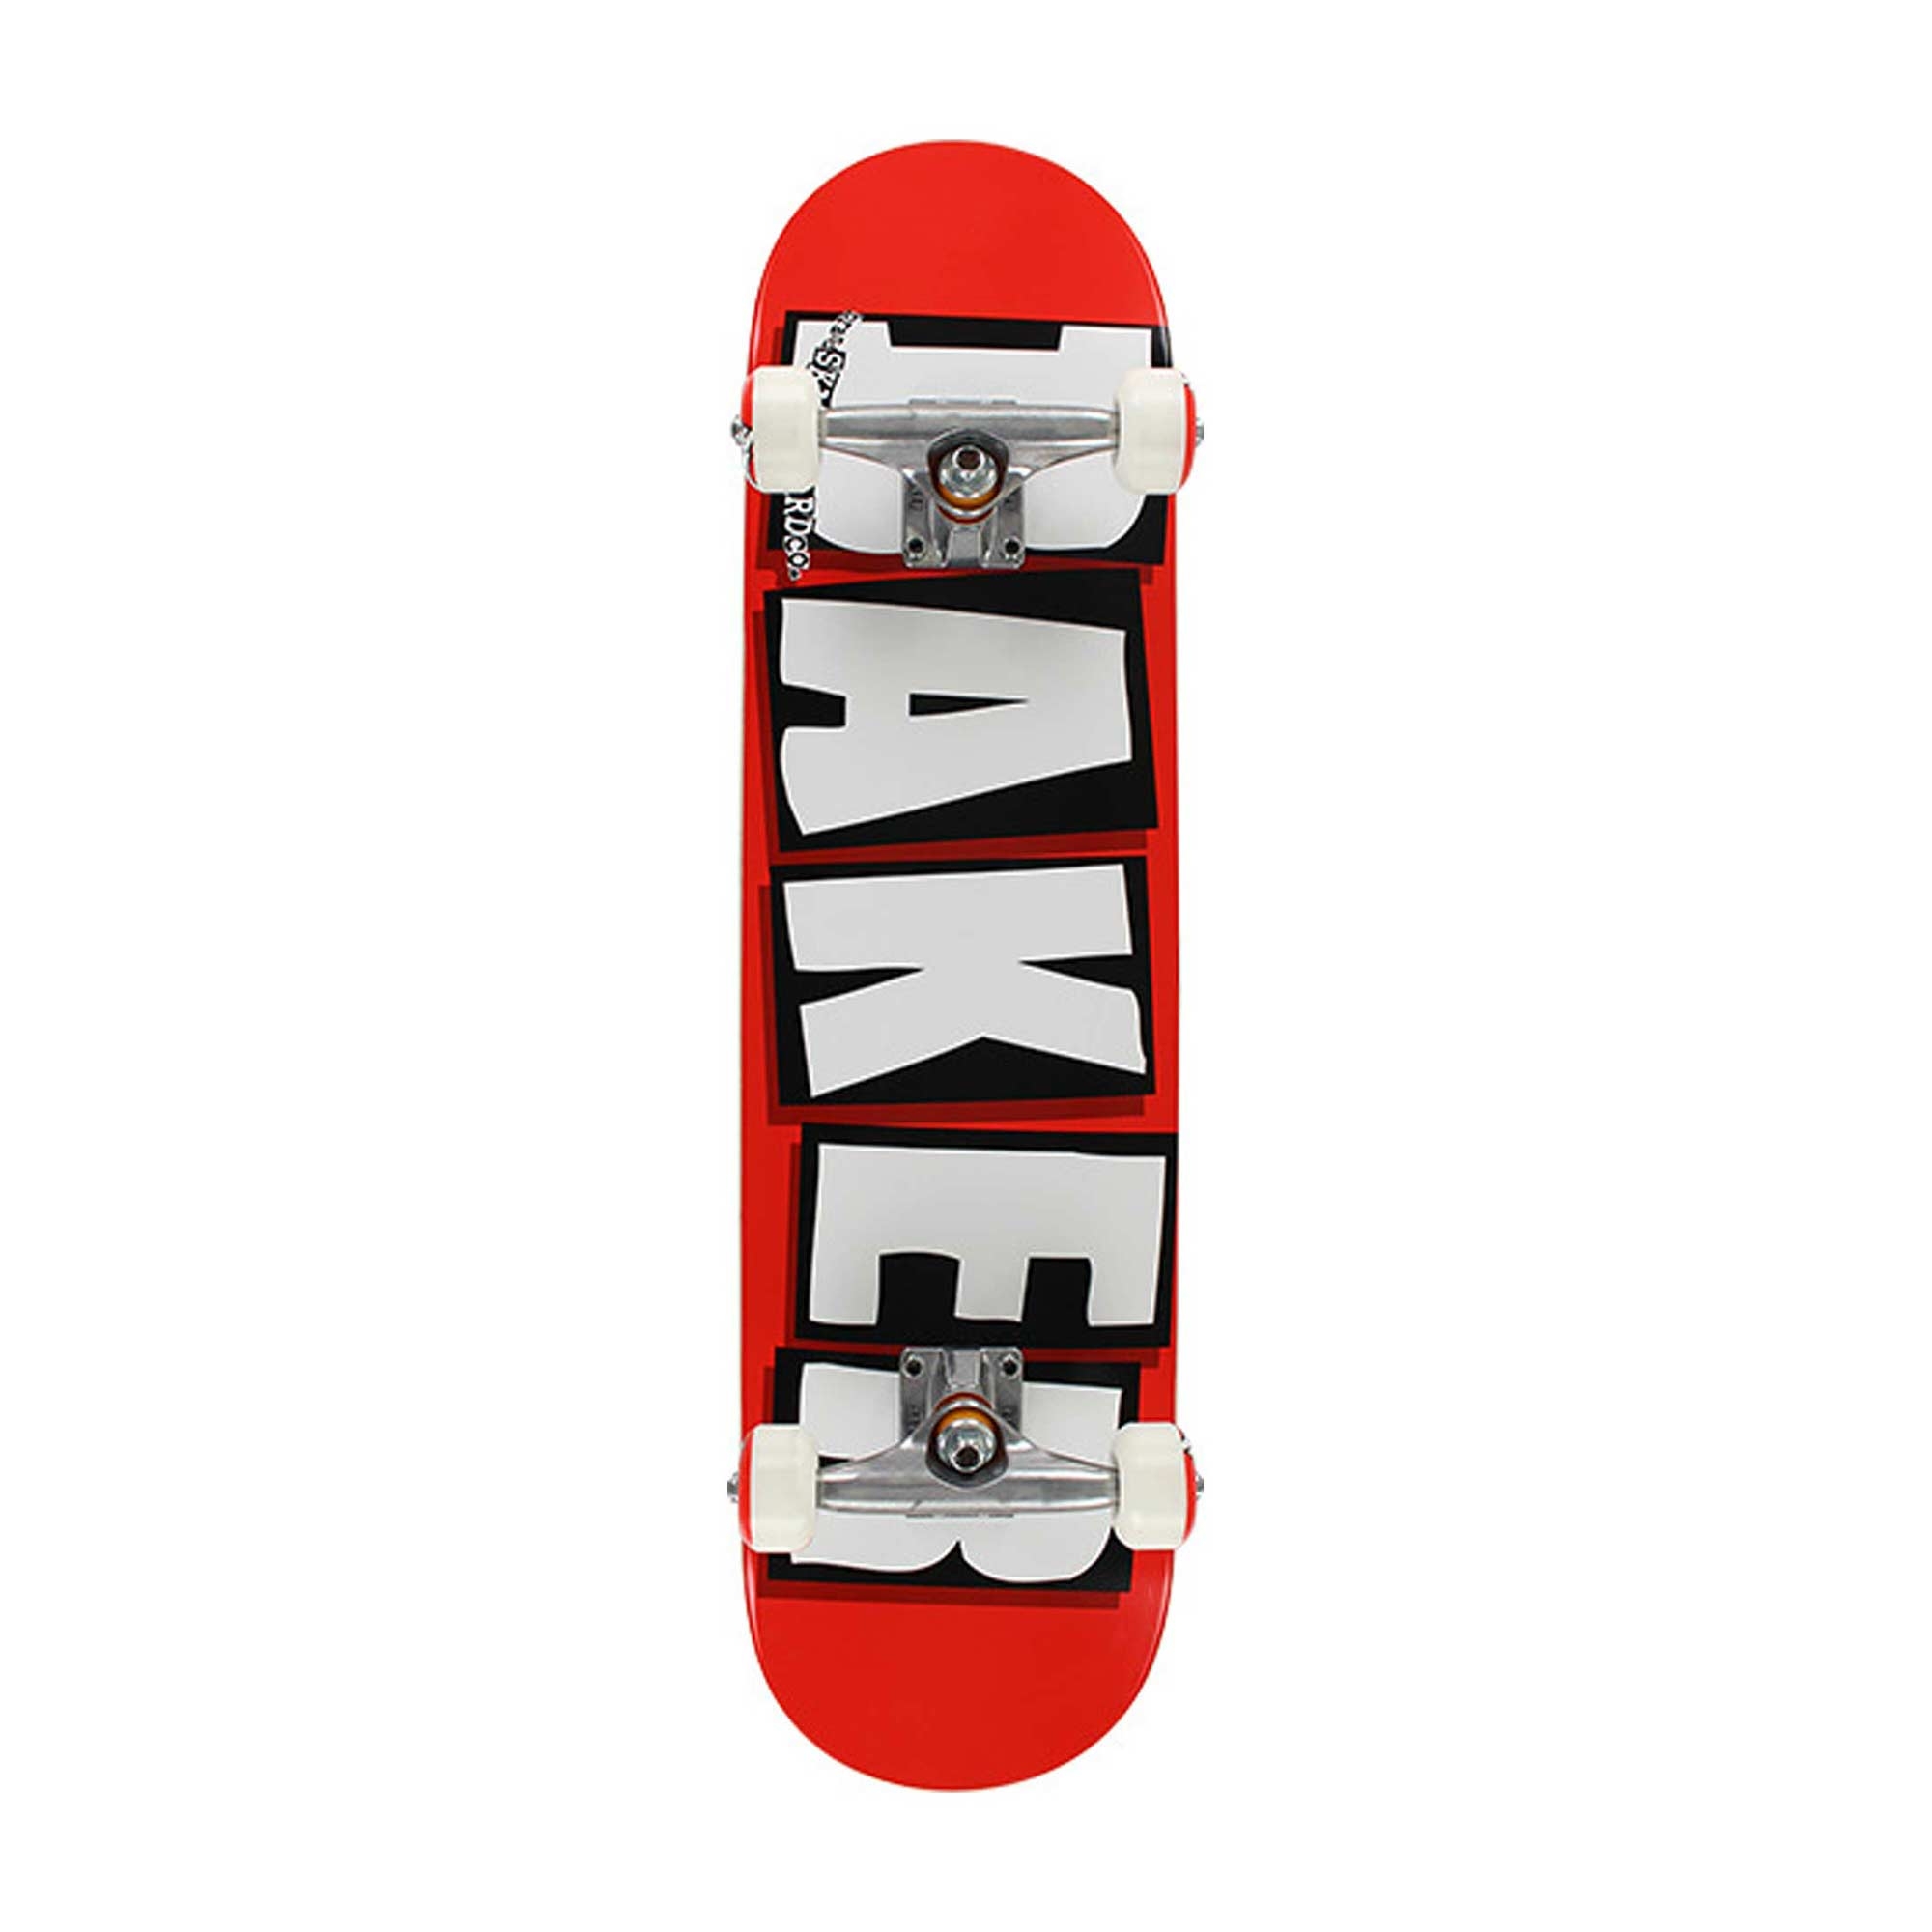 BAKER Complete BRAND LOGO WHT (red/white)Skateboard 8.0, red/white 8.0''